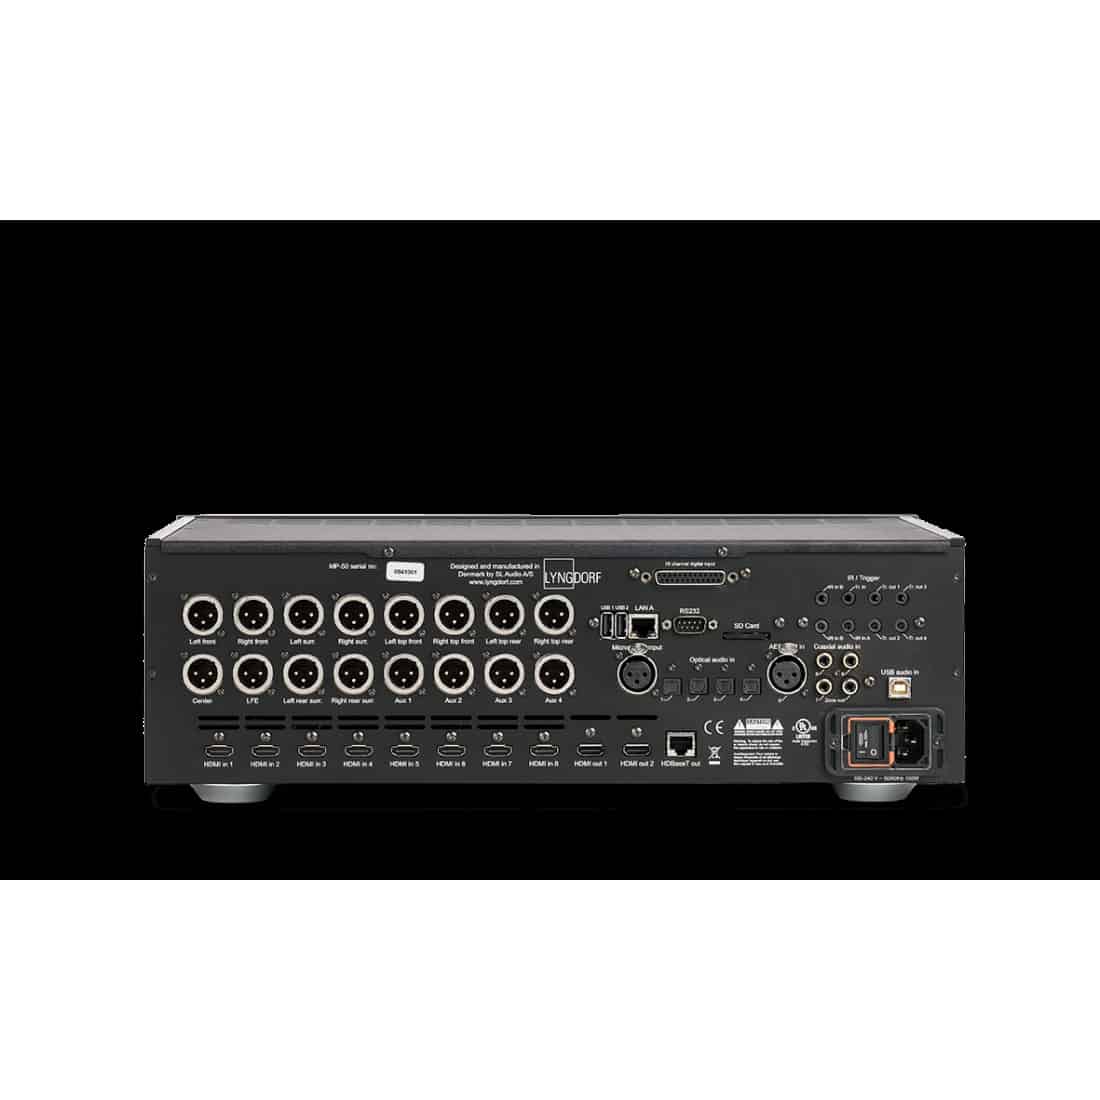 Processeur audio video Lyngdorf MP-50 avec correction acoustique